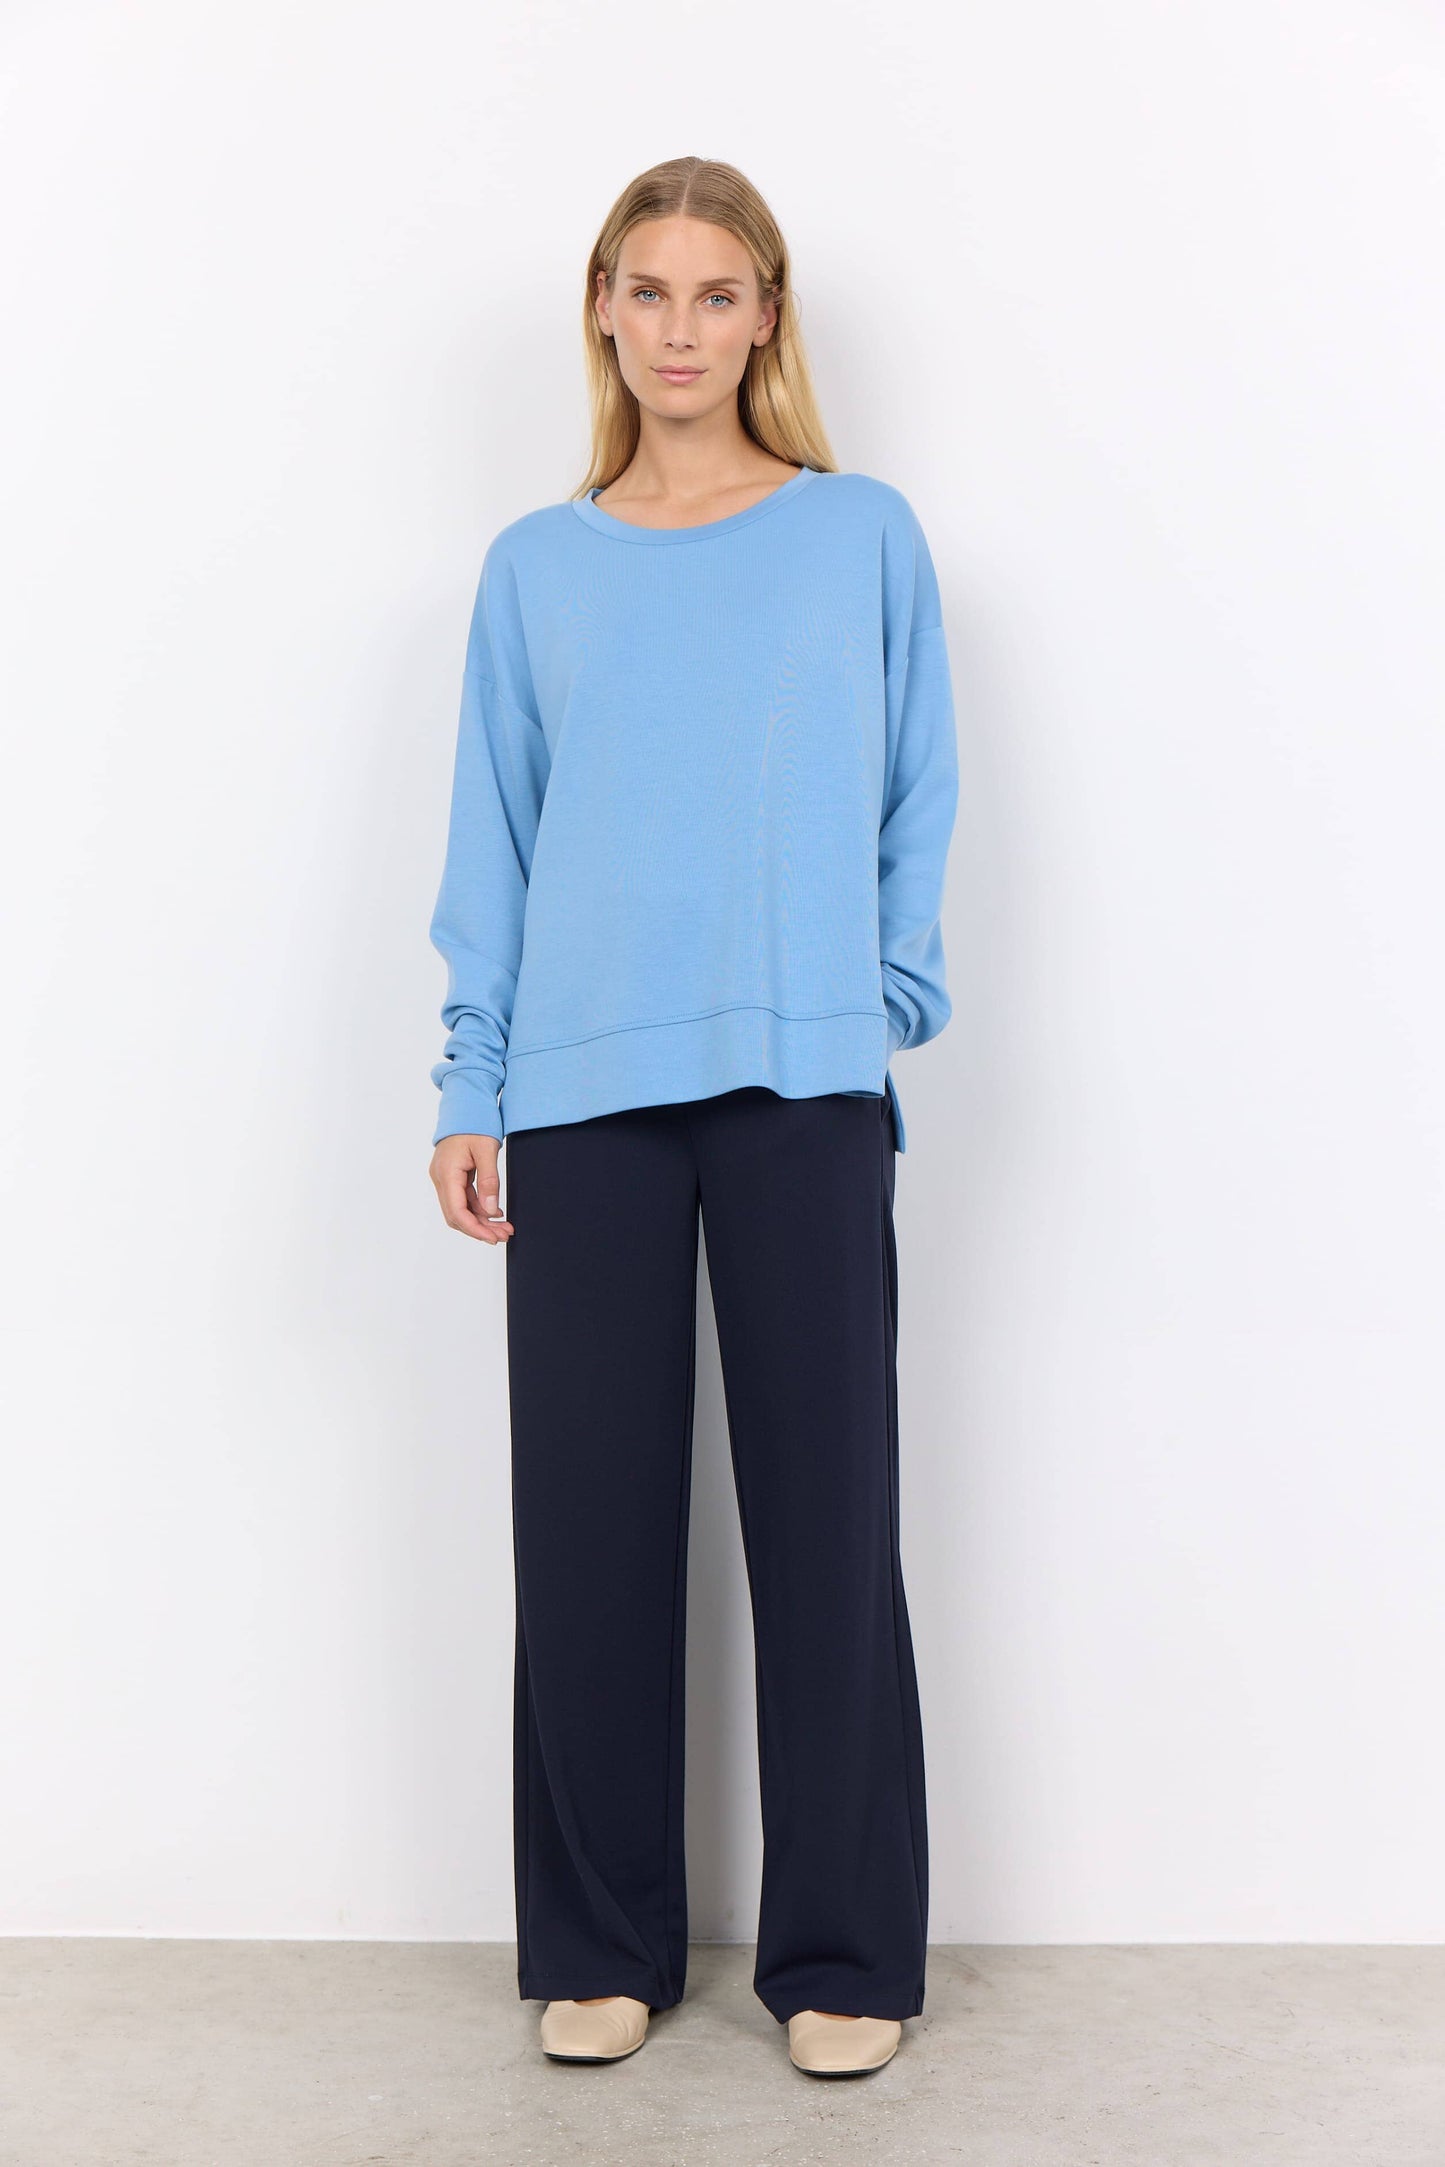 Banu Long Sleeve Sweatshirt in Crystal Blue Sweatshirt Soyaconcept 